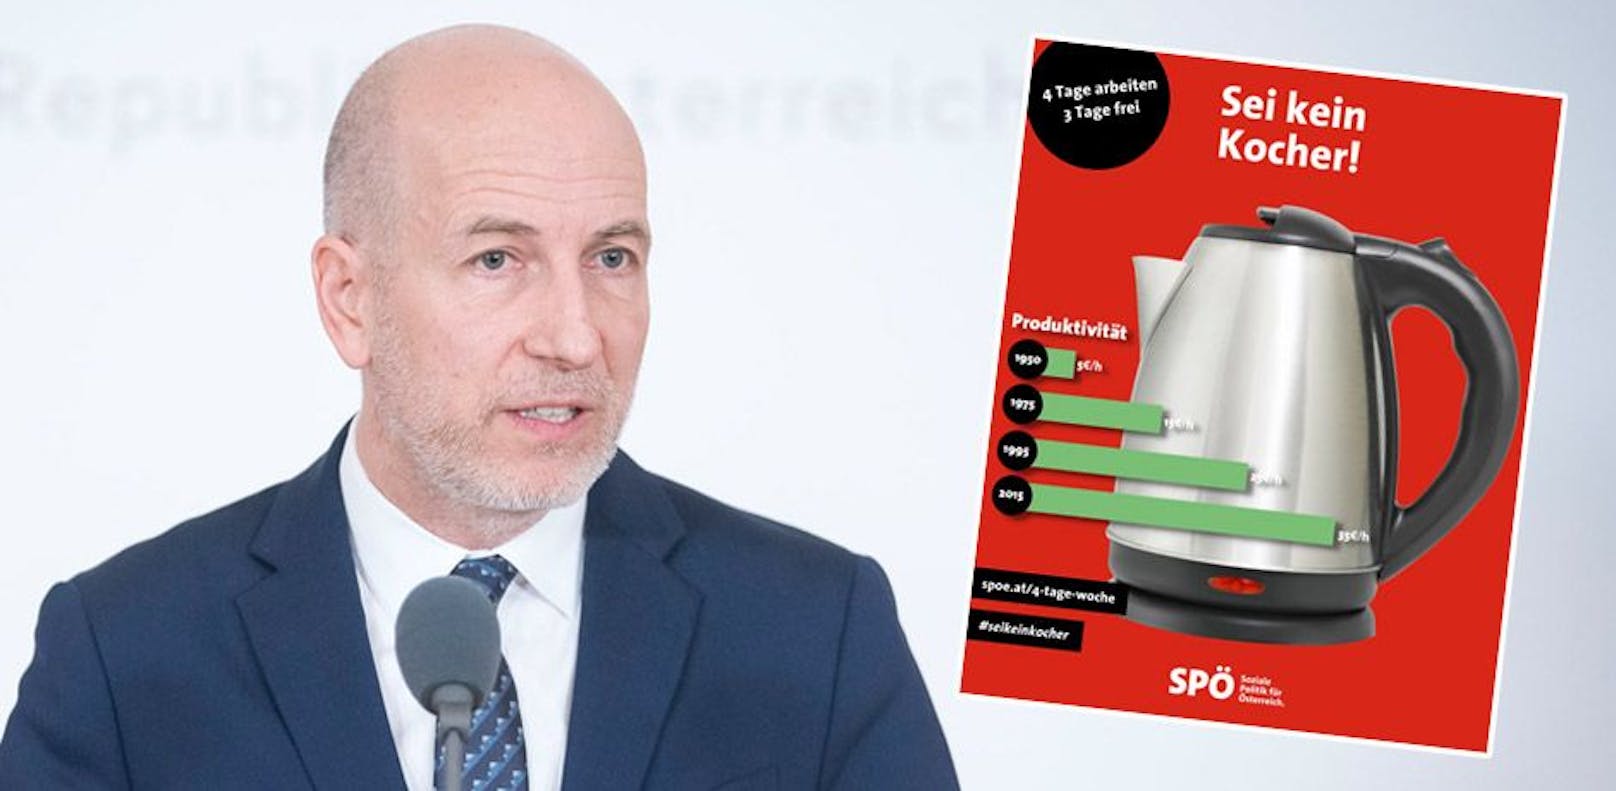 "Sei kein Kocher" – SPÖ stichelt gegen Arbeitsminister